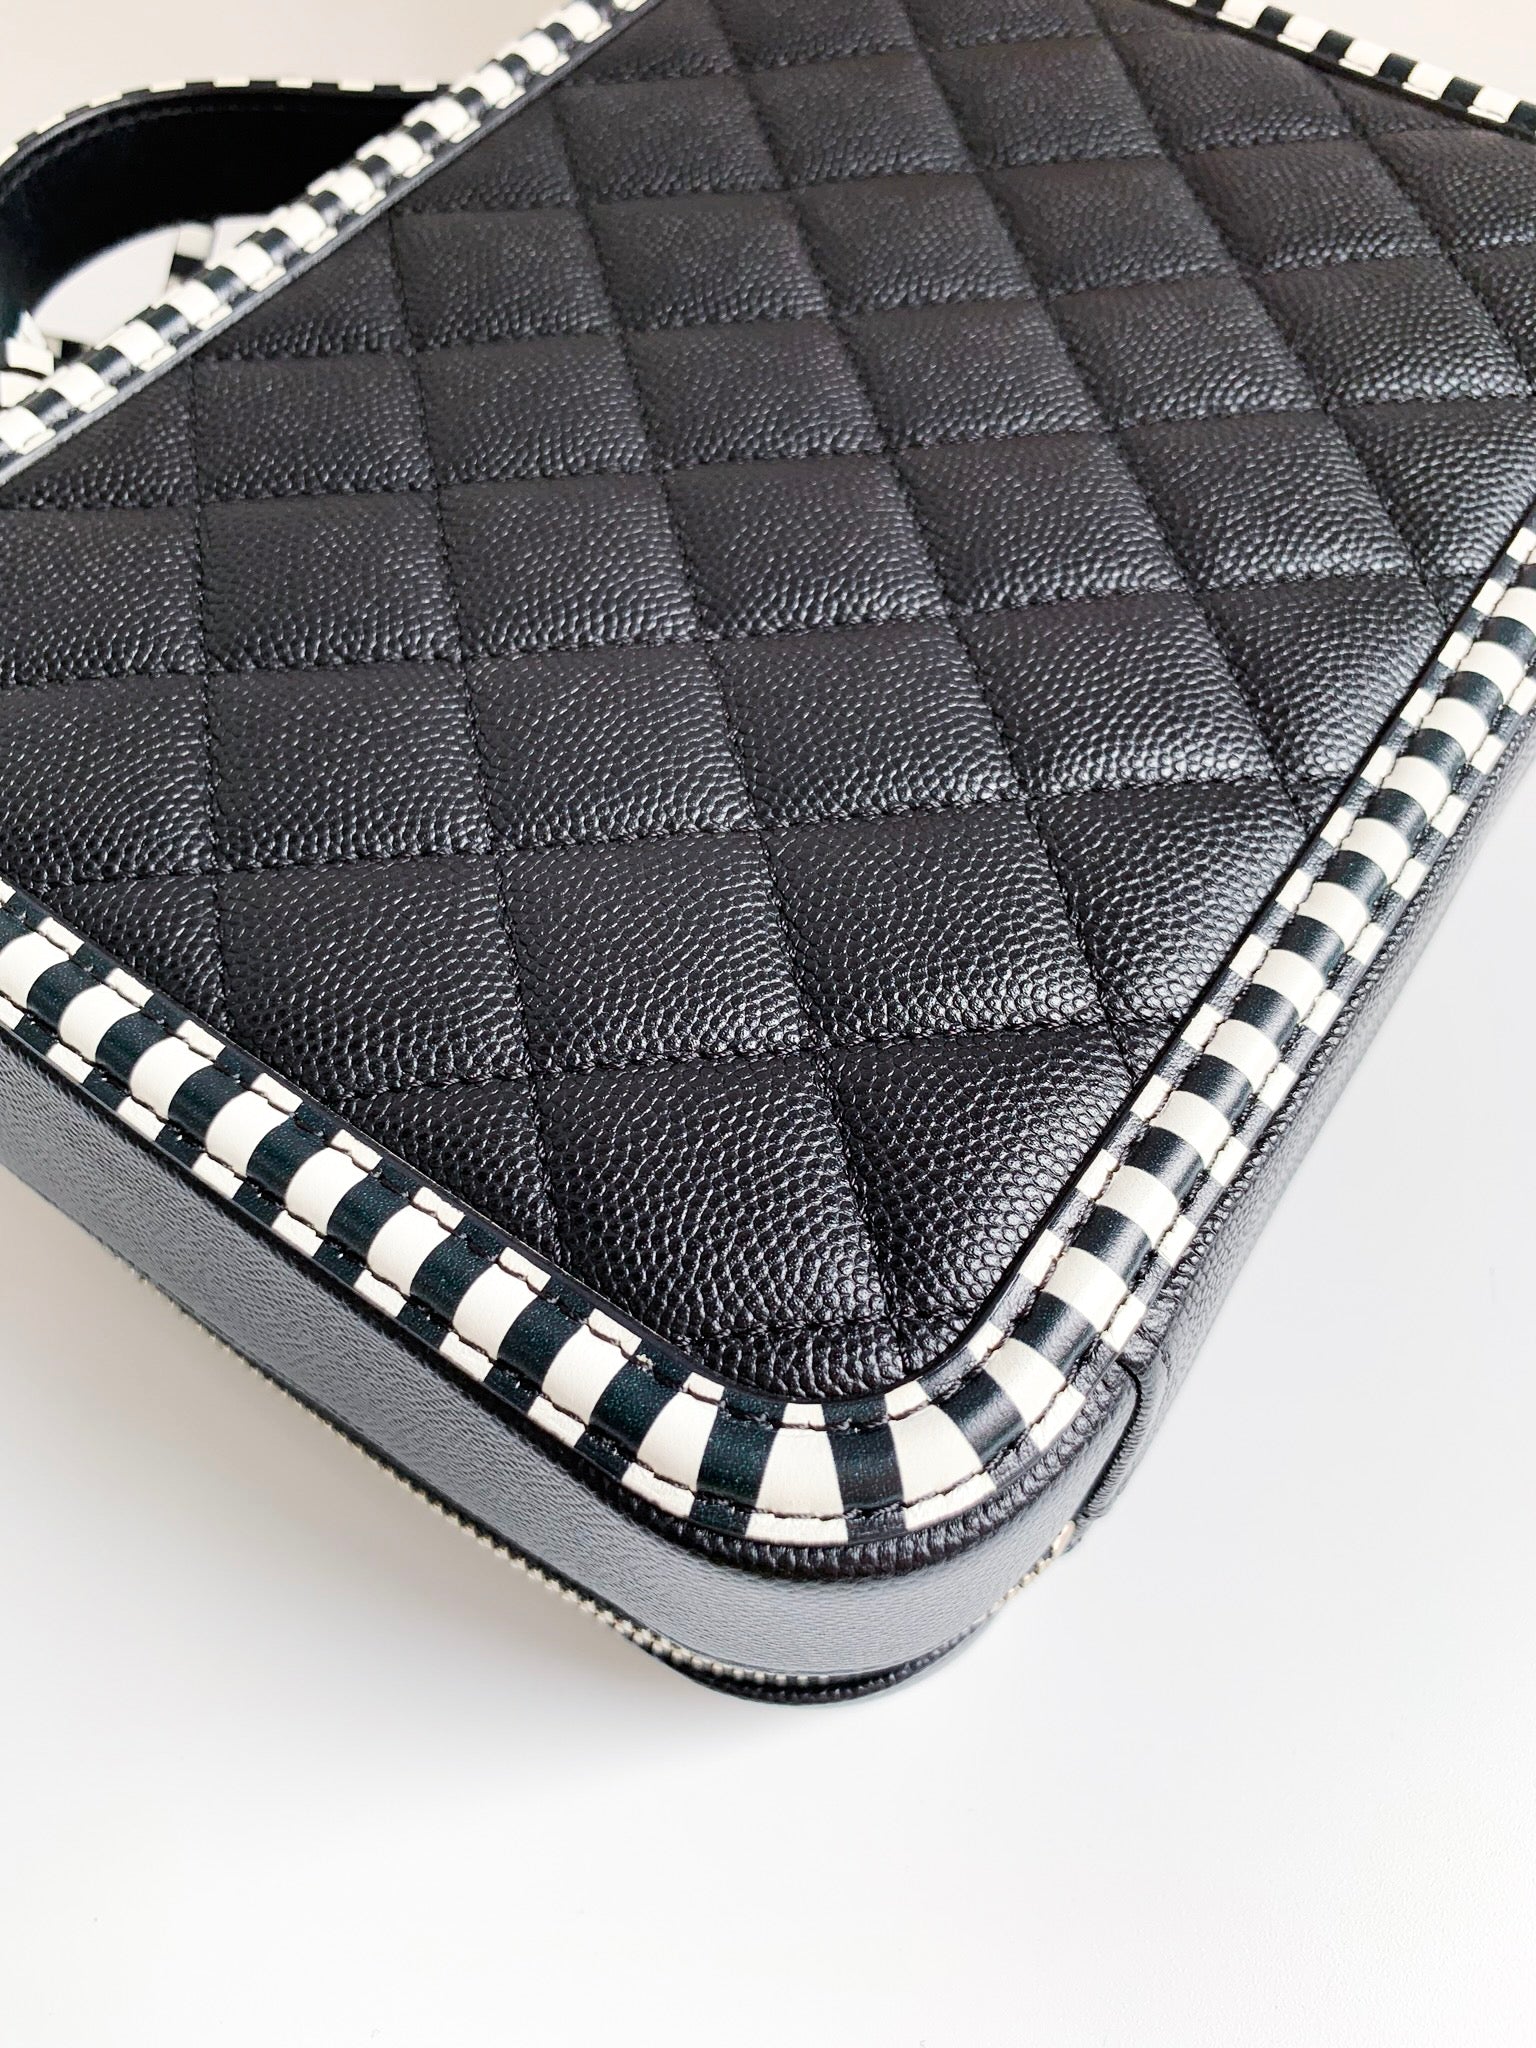 Black White Chanel iPad Air 2 Case